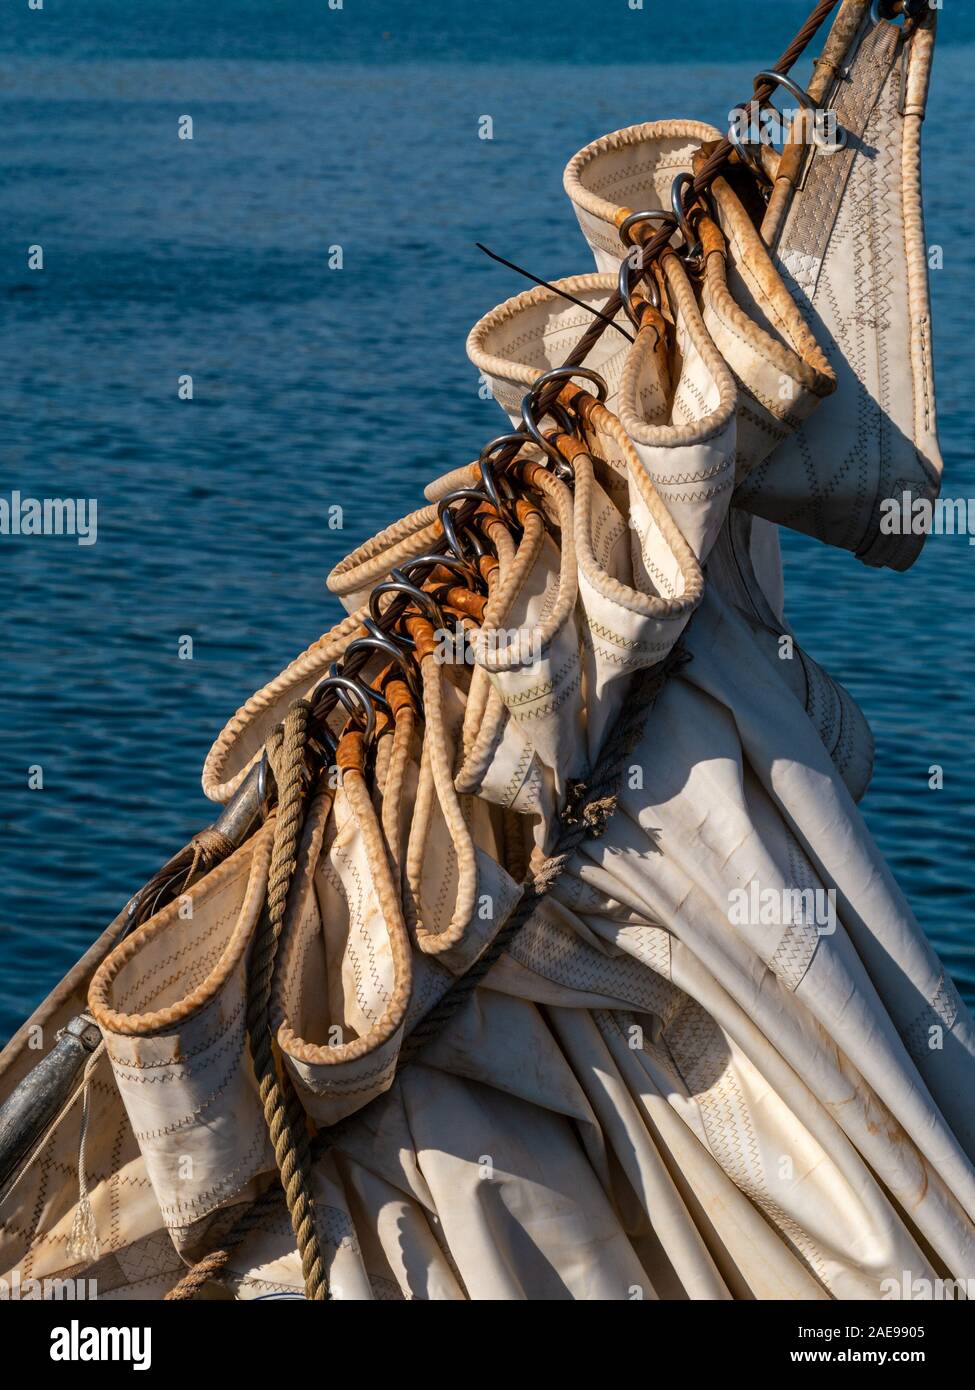 Nahaufnahme der Versammelten jib Vorsegel auf Flying Dutchman Schoner, ein traditionelles großes Segelschiff, Colonsay, Schottland, Großbritannien Stockfoto